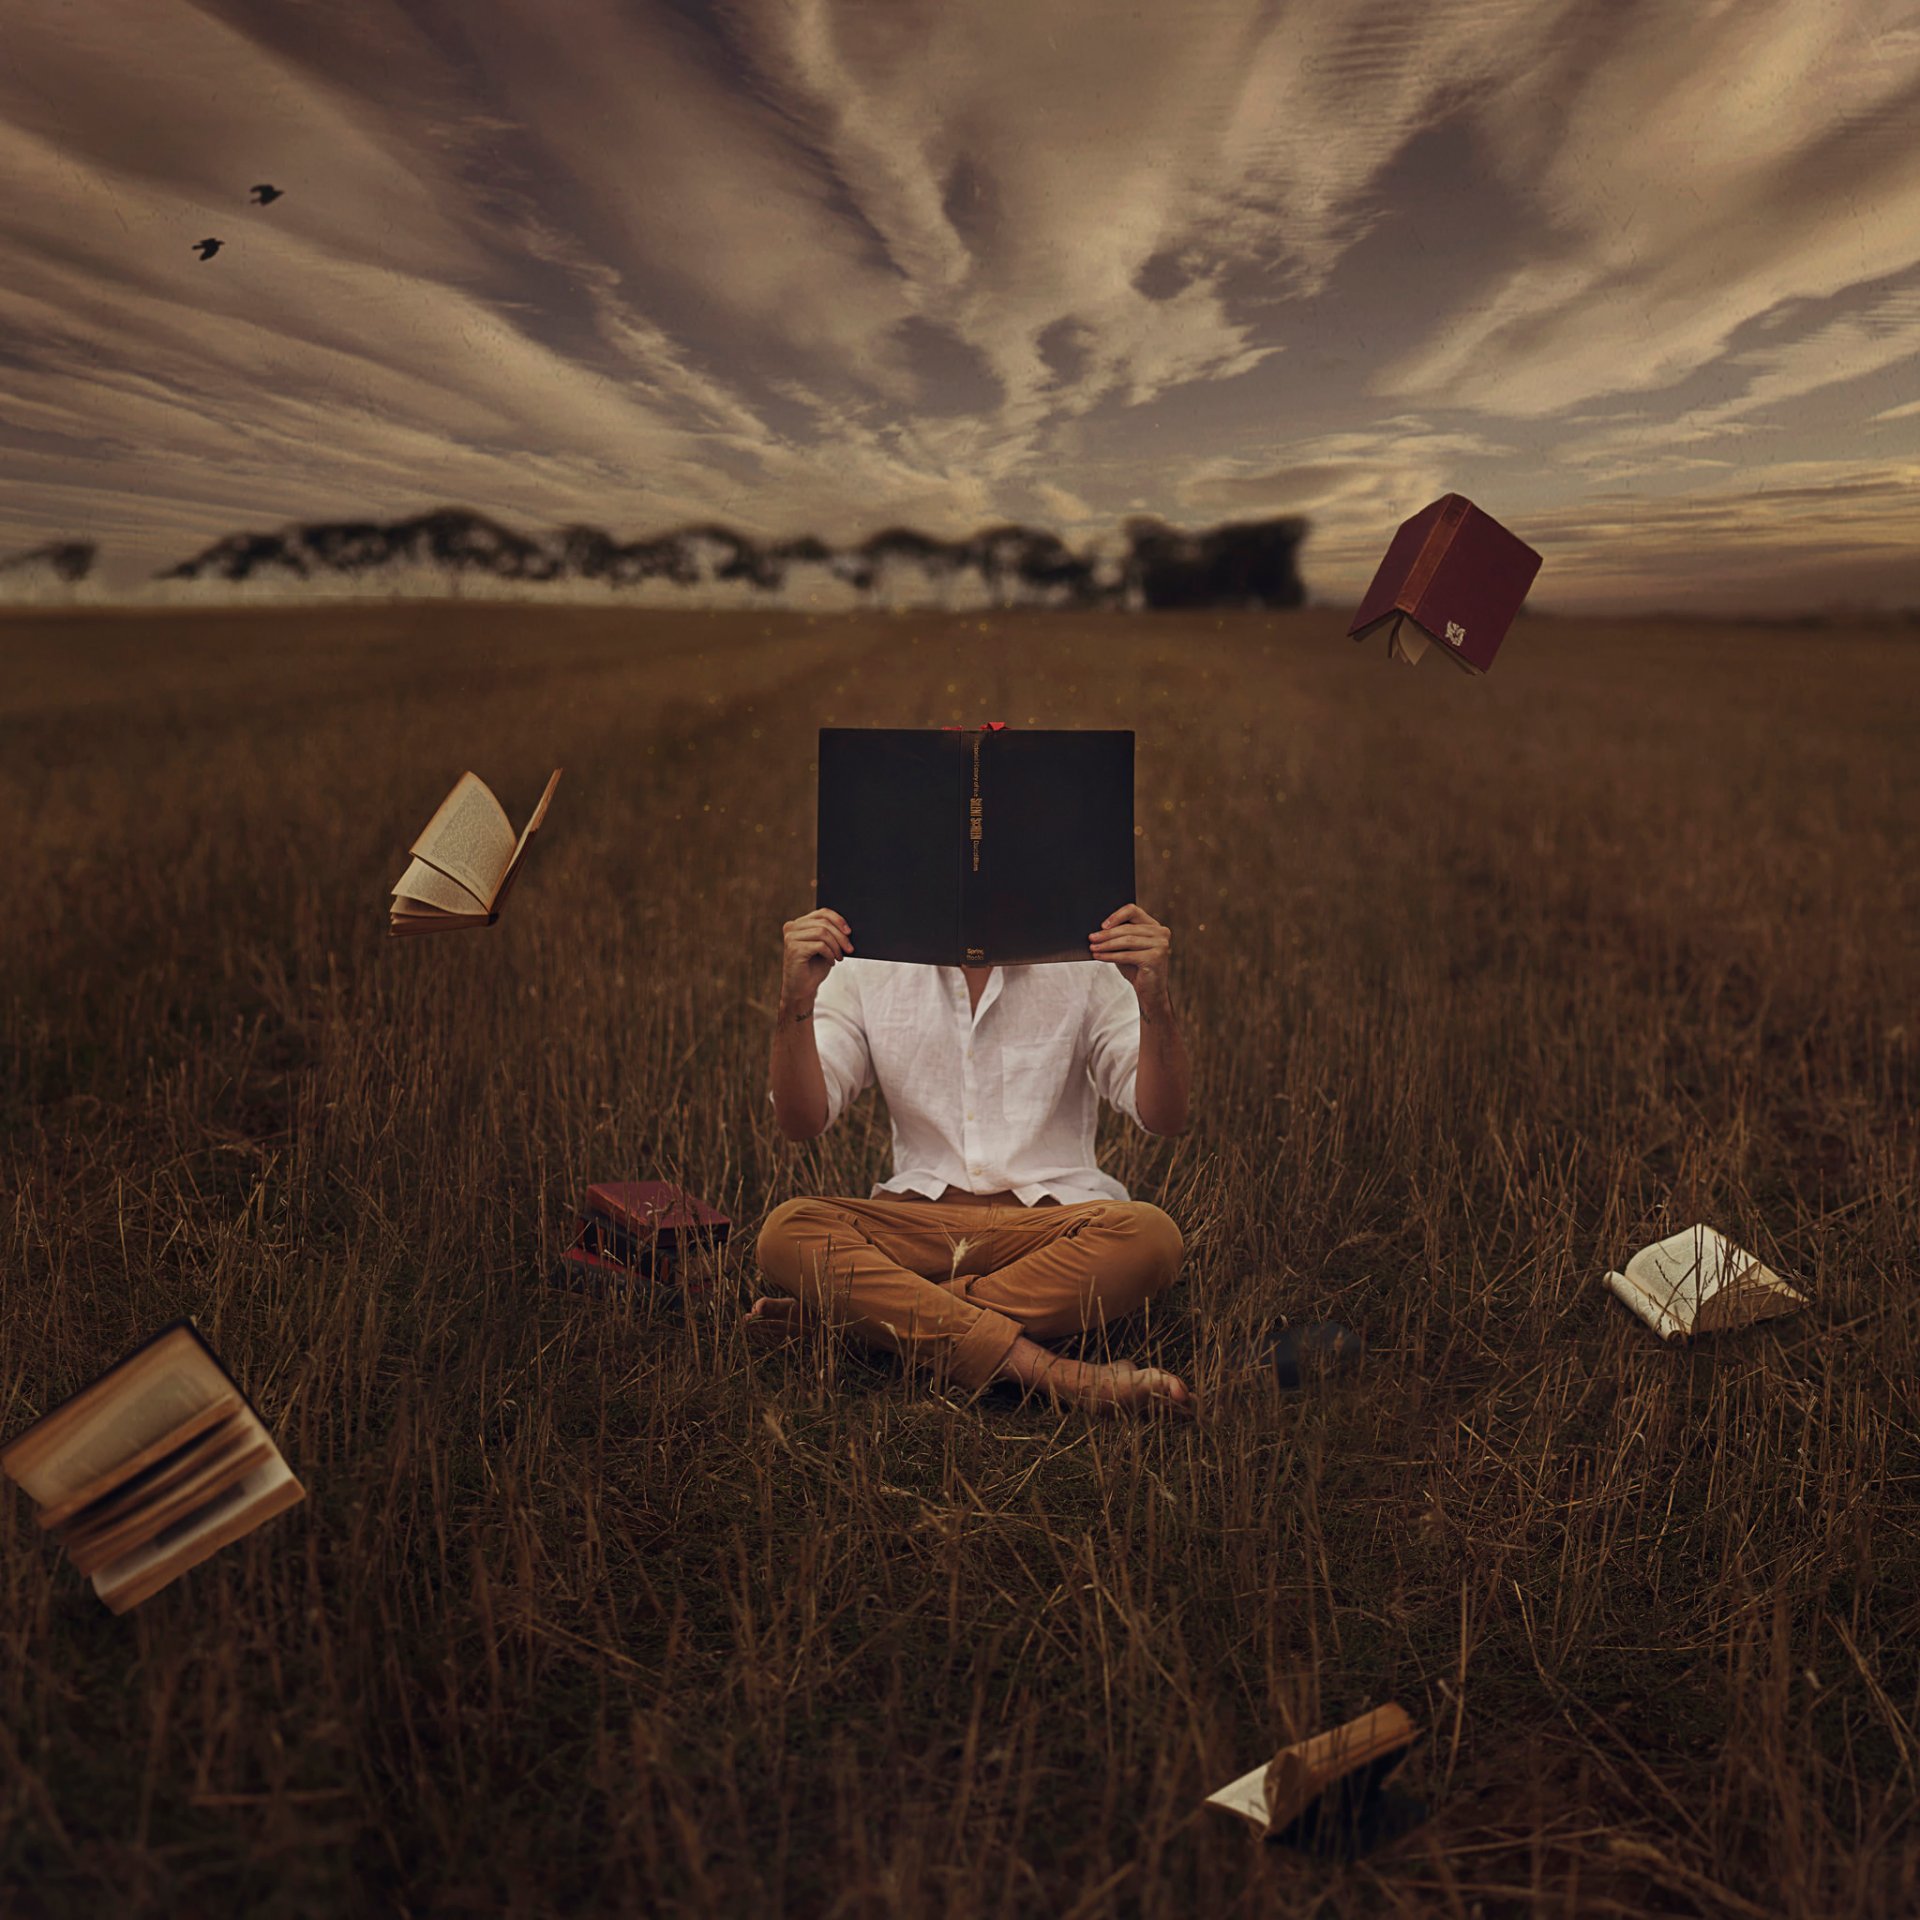 Творческие размышления. Книга человек. Сюрреализм. Фотосессия с книжкой в поле. Чтение в одиночестве.